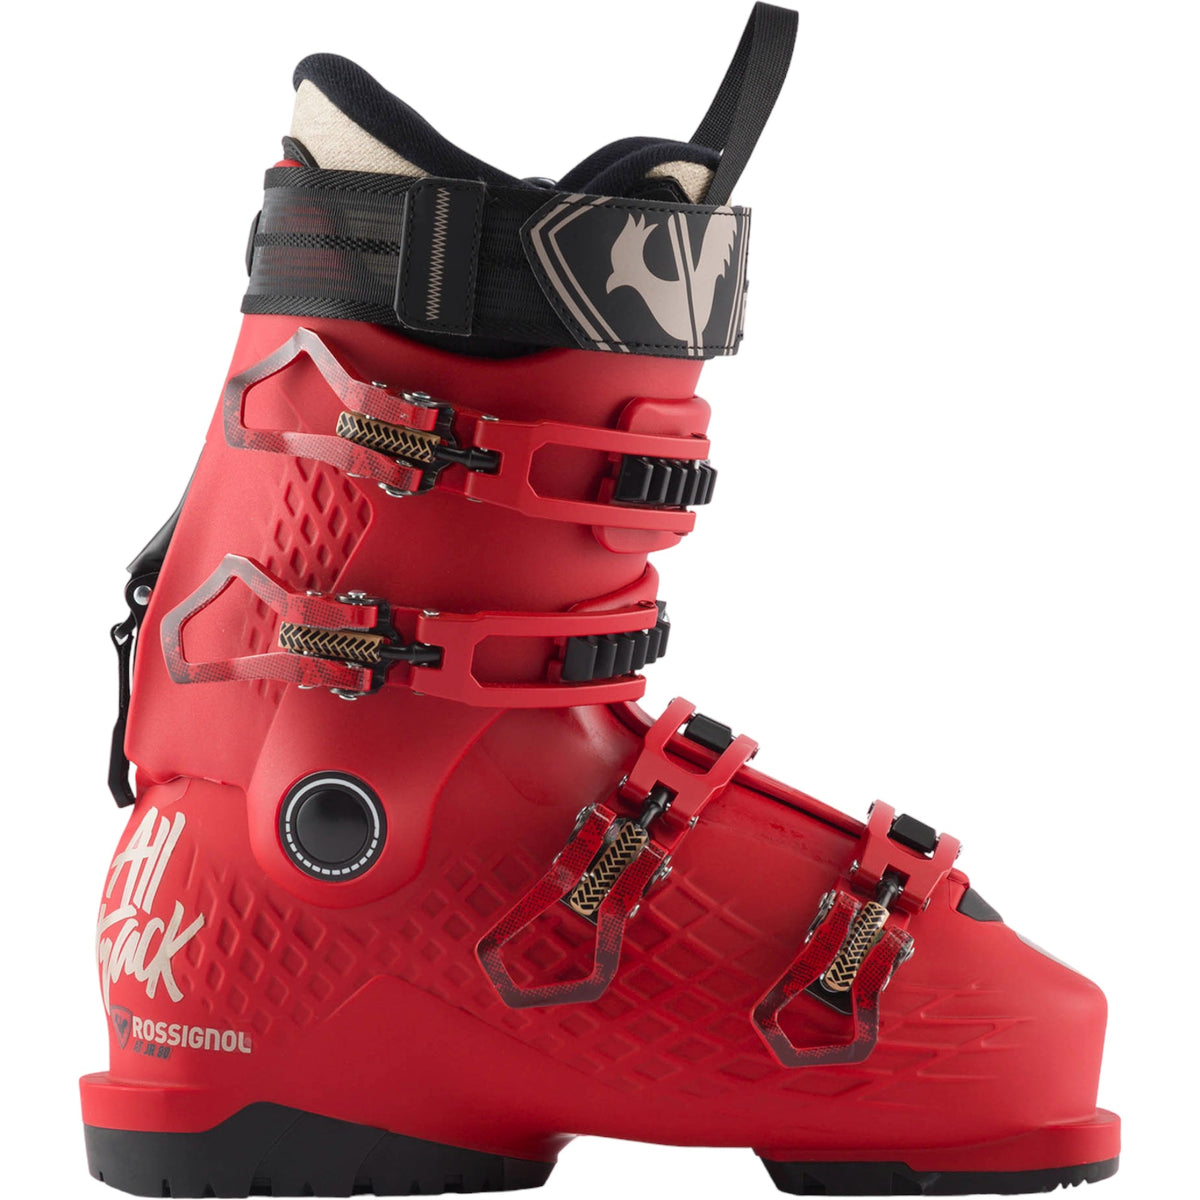 Chaussures de ski, conseils d'achat bottes de ski alpin